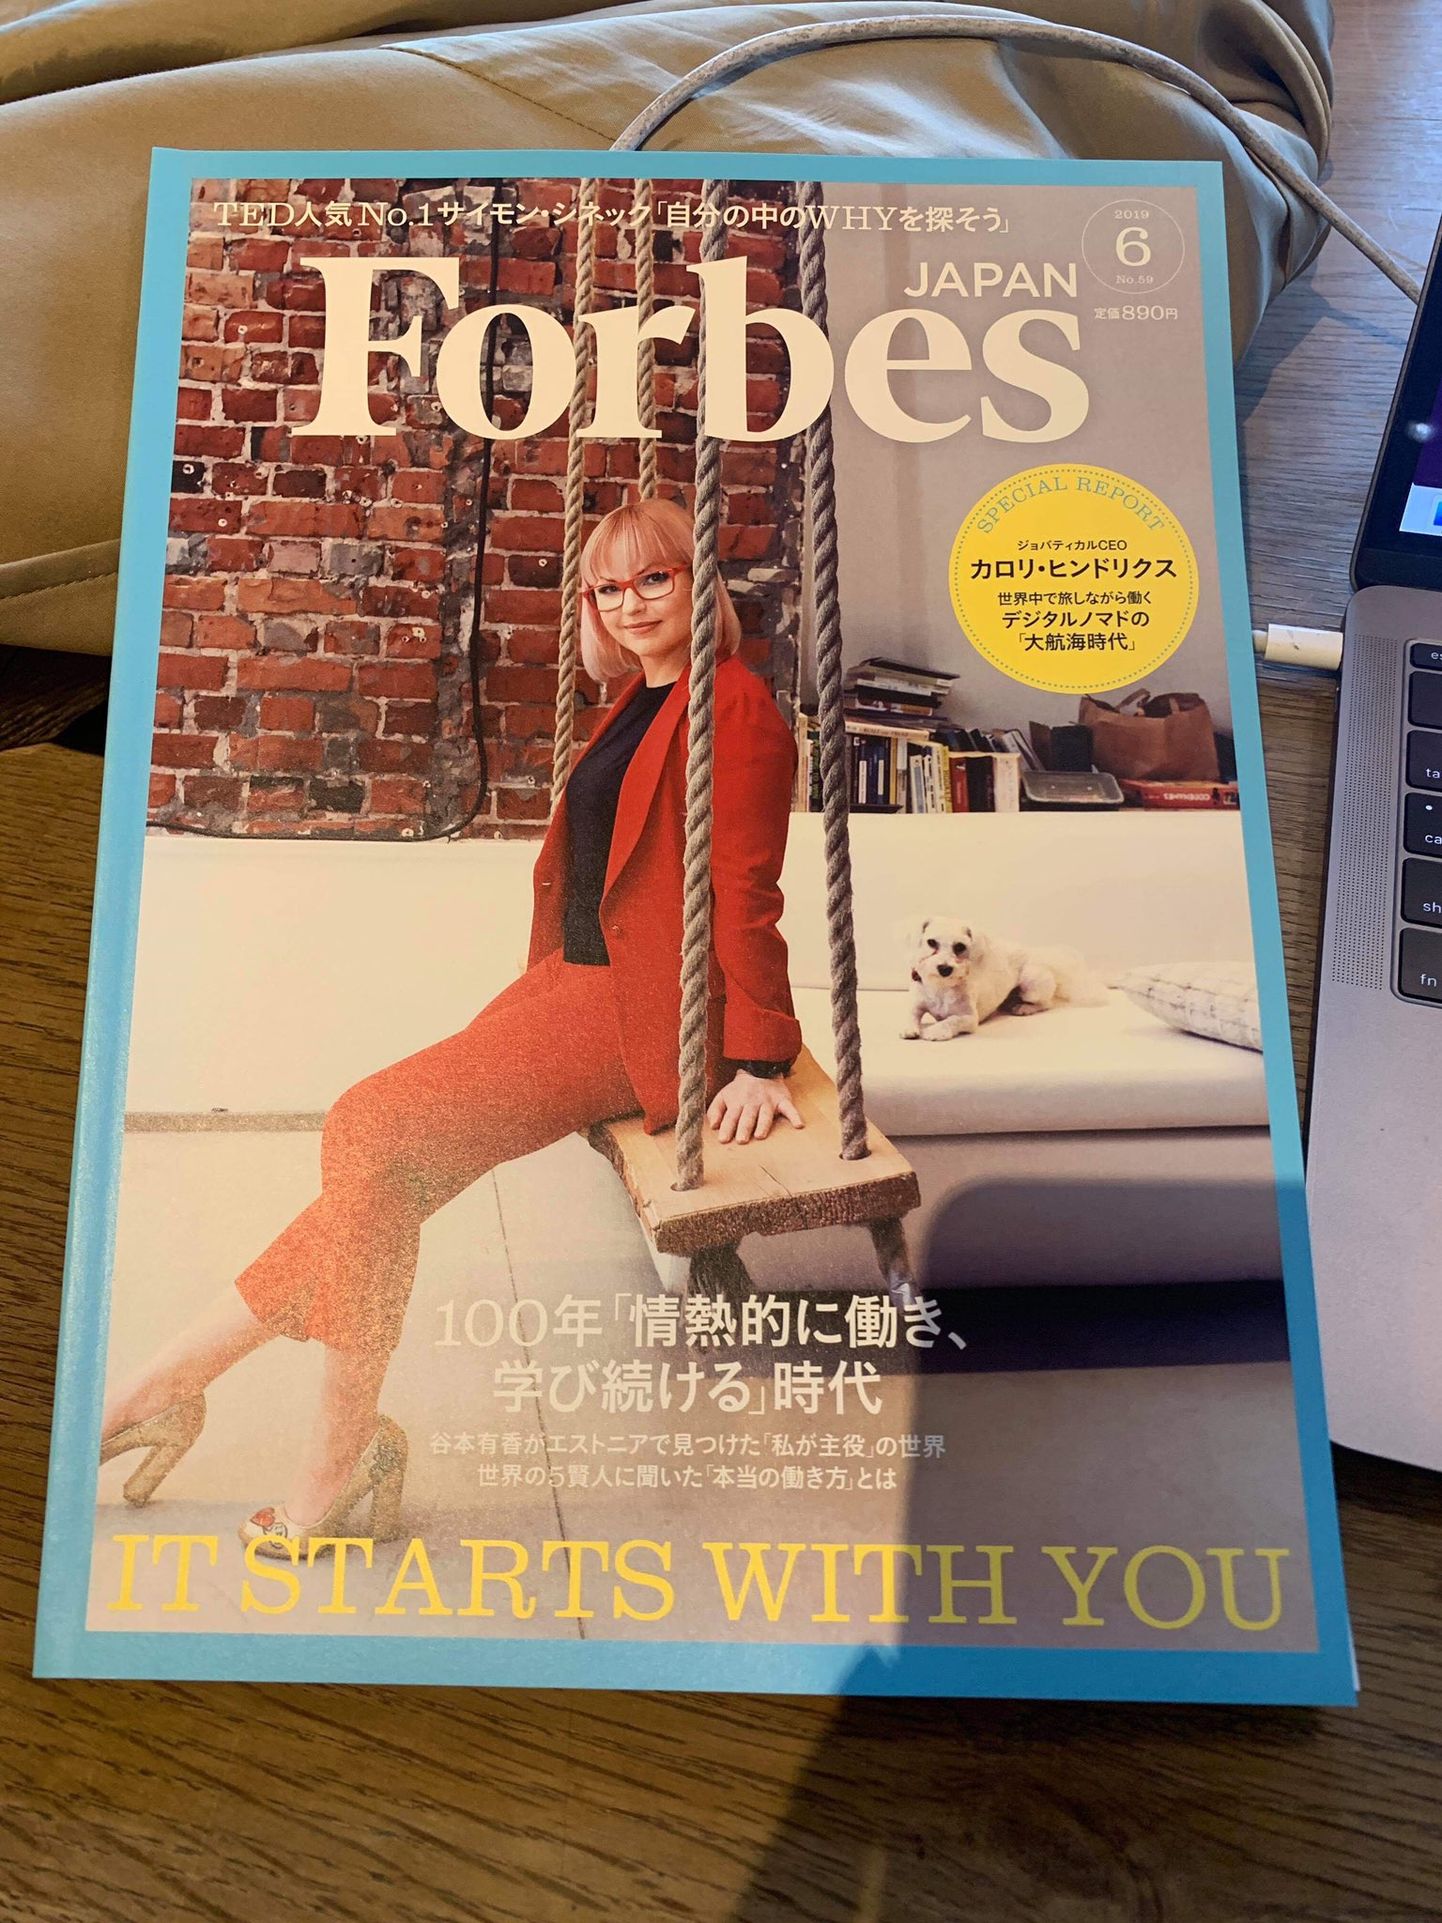 Кароли Хиндрикс на обложке японского Forbes.